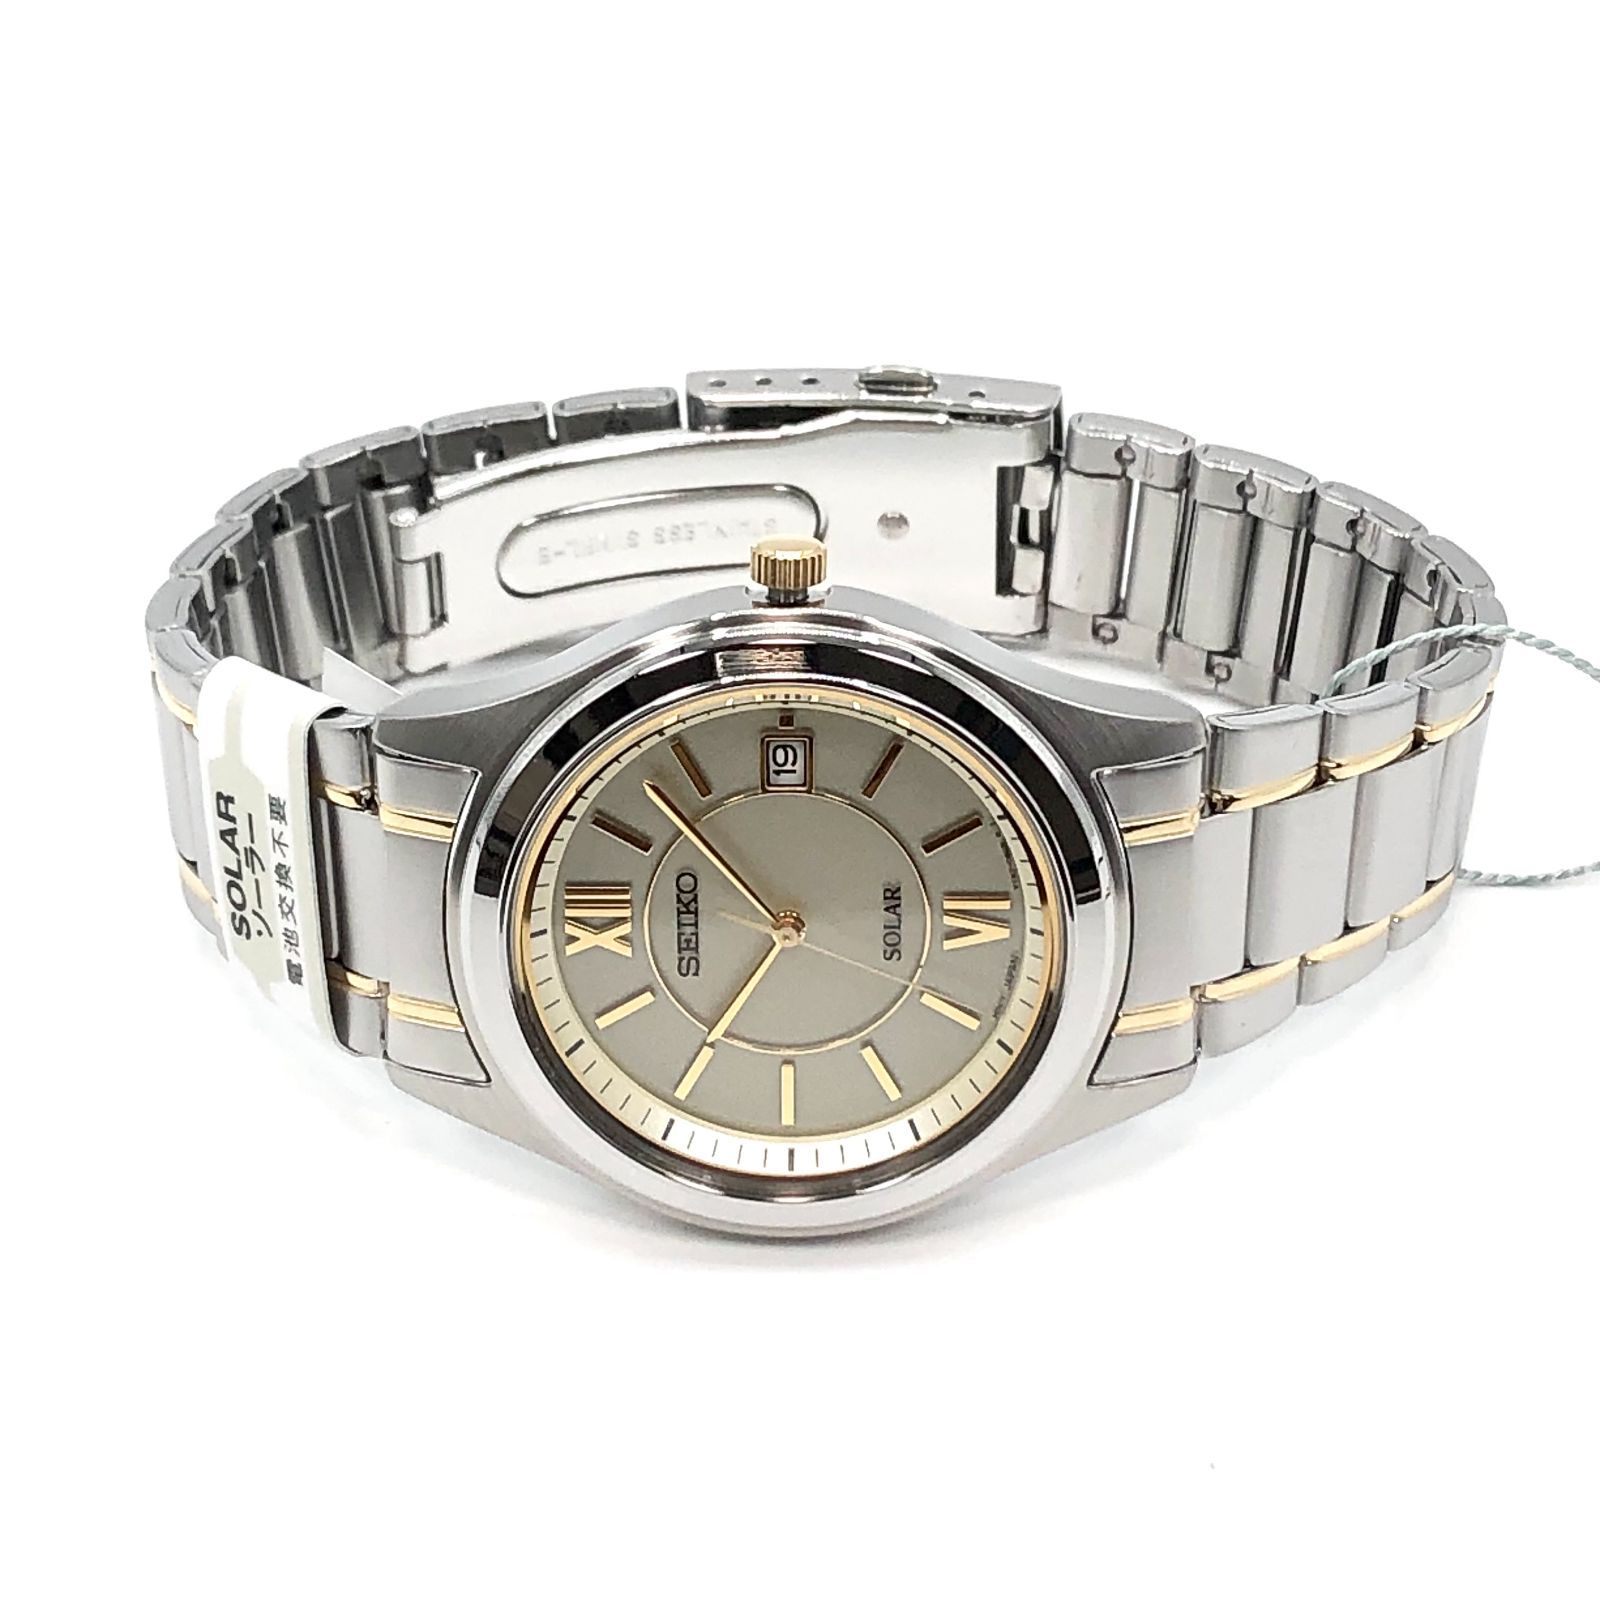 新品正規品『SEIKO SELECTION』セイコー セレクション ソーラー腕時計